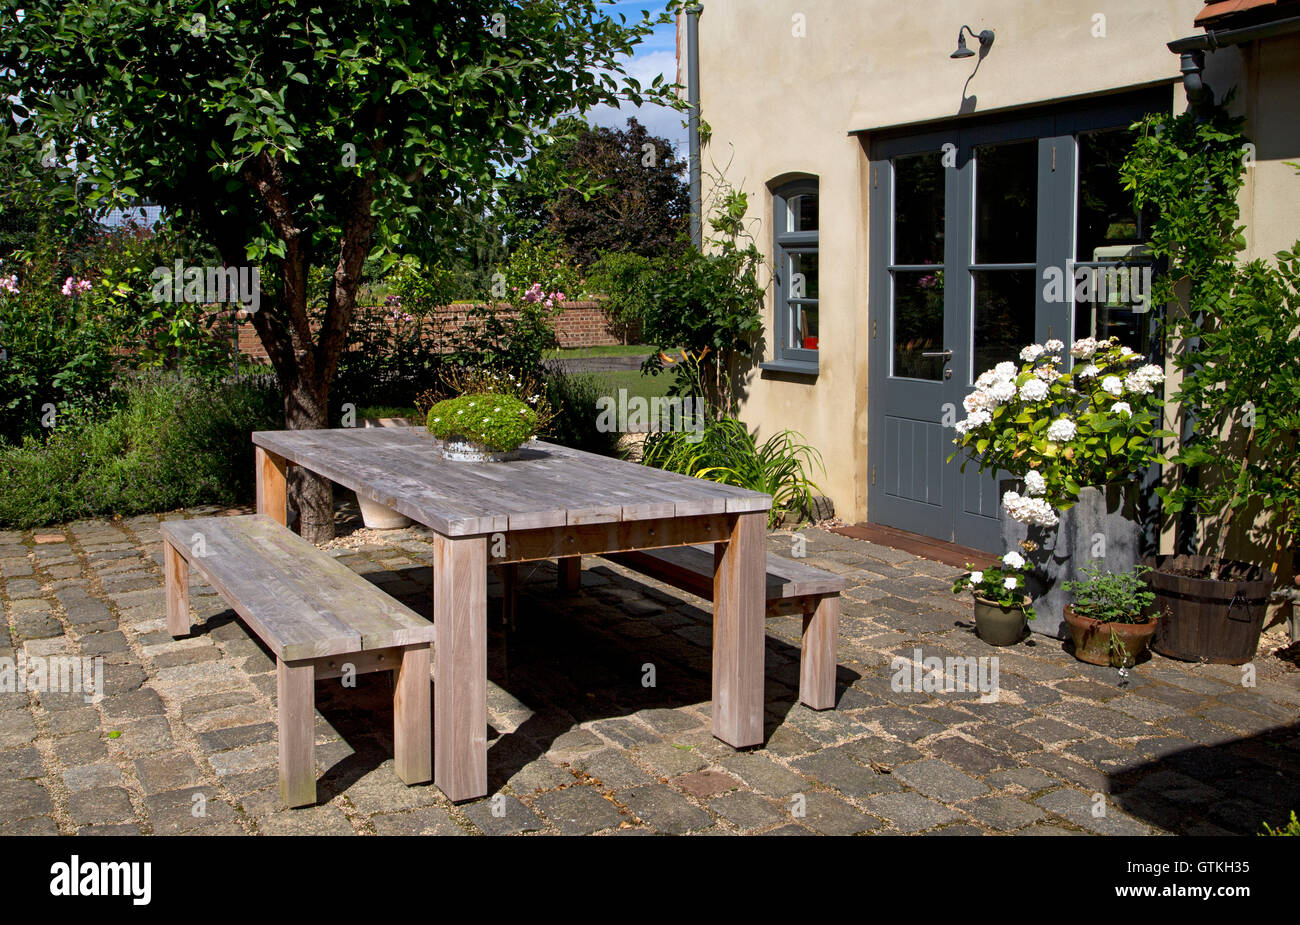 Outdoor garden dining wooden table and benches, English garden,England Stock Photo